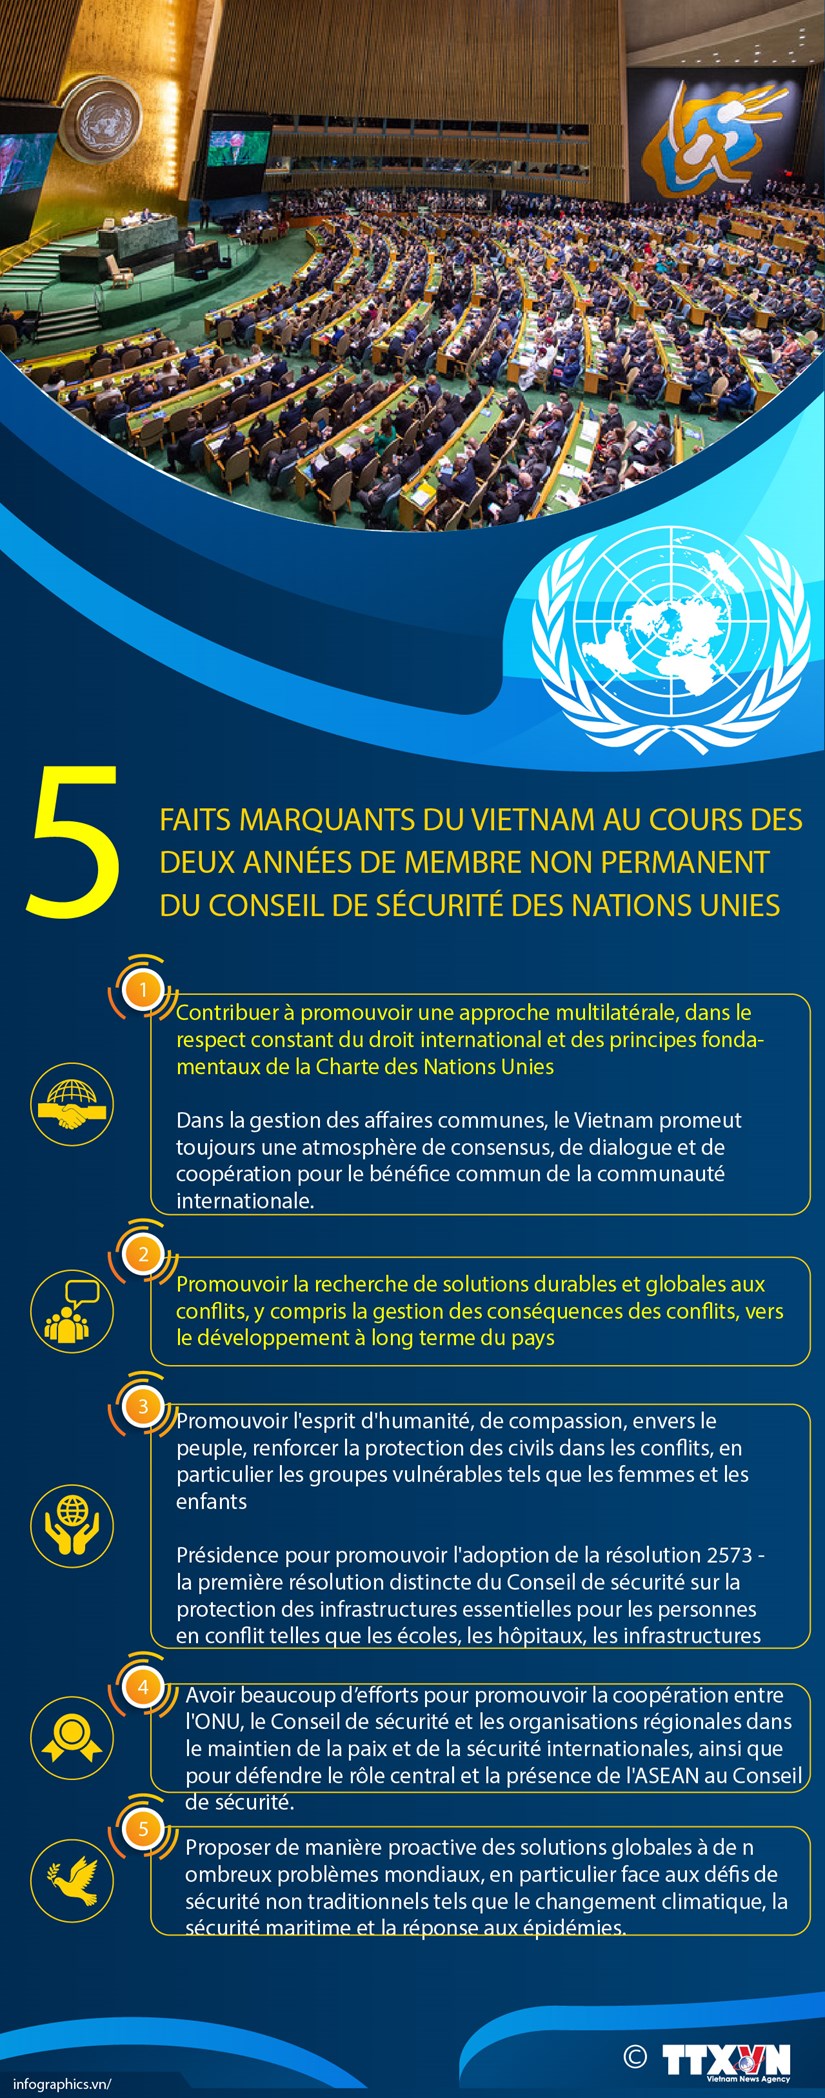 Cinq faits marquants du Vietnam en 2 annees de membres non permanent du Conseil de securite de l'ONU hinh anh 1